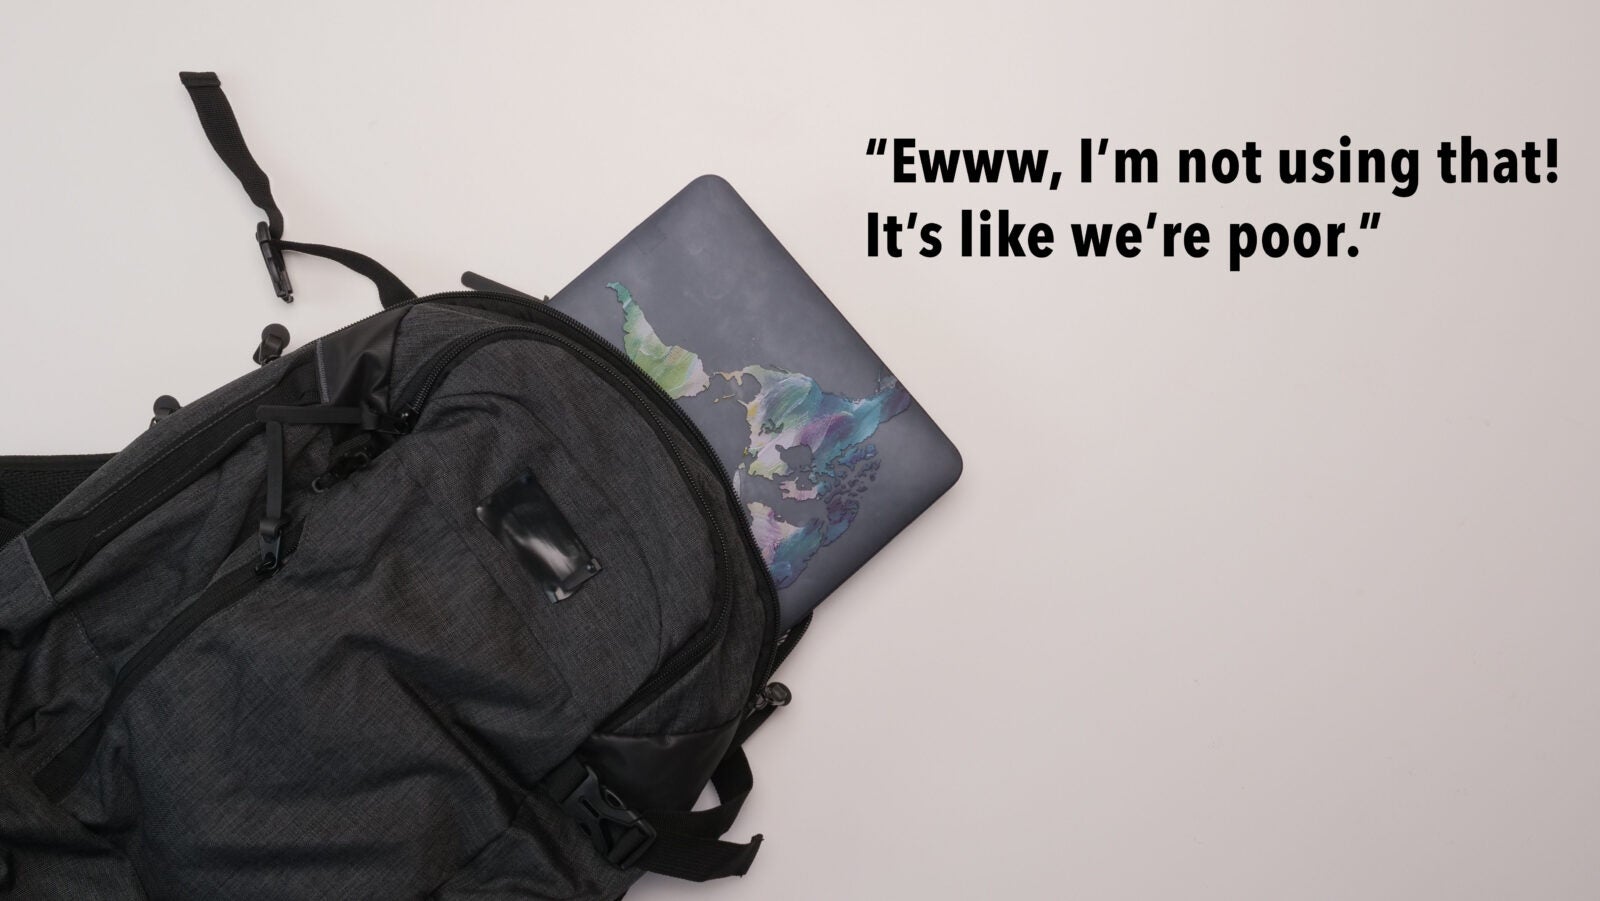 Schoolbag